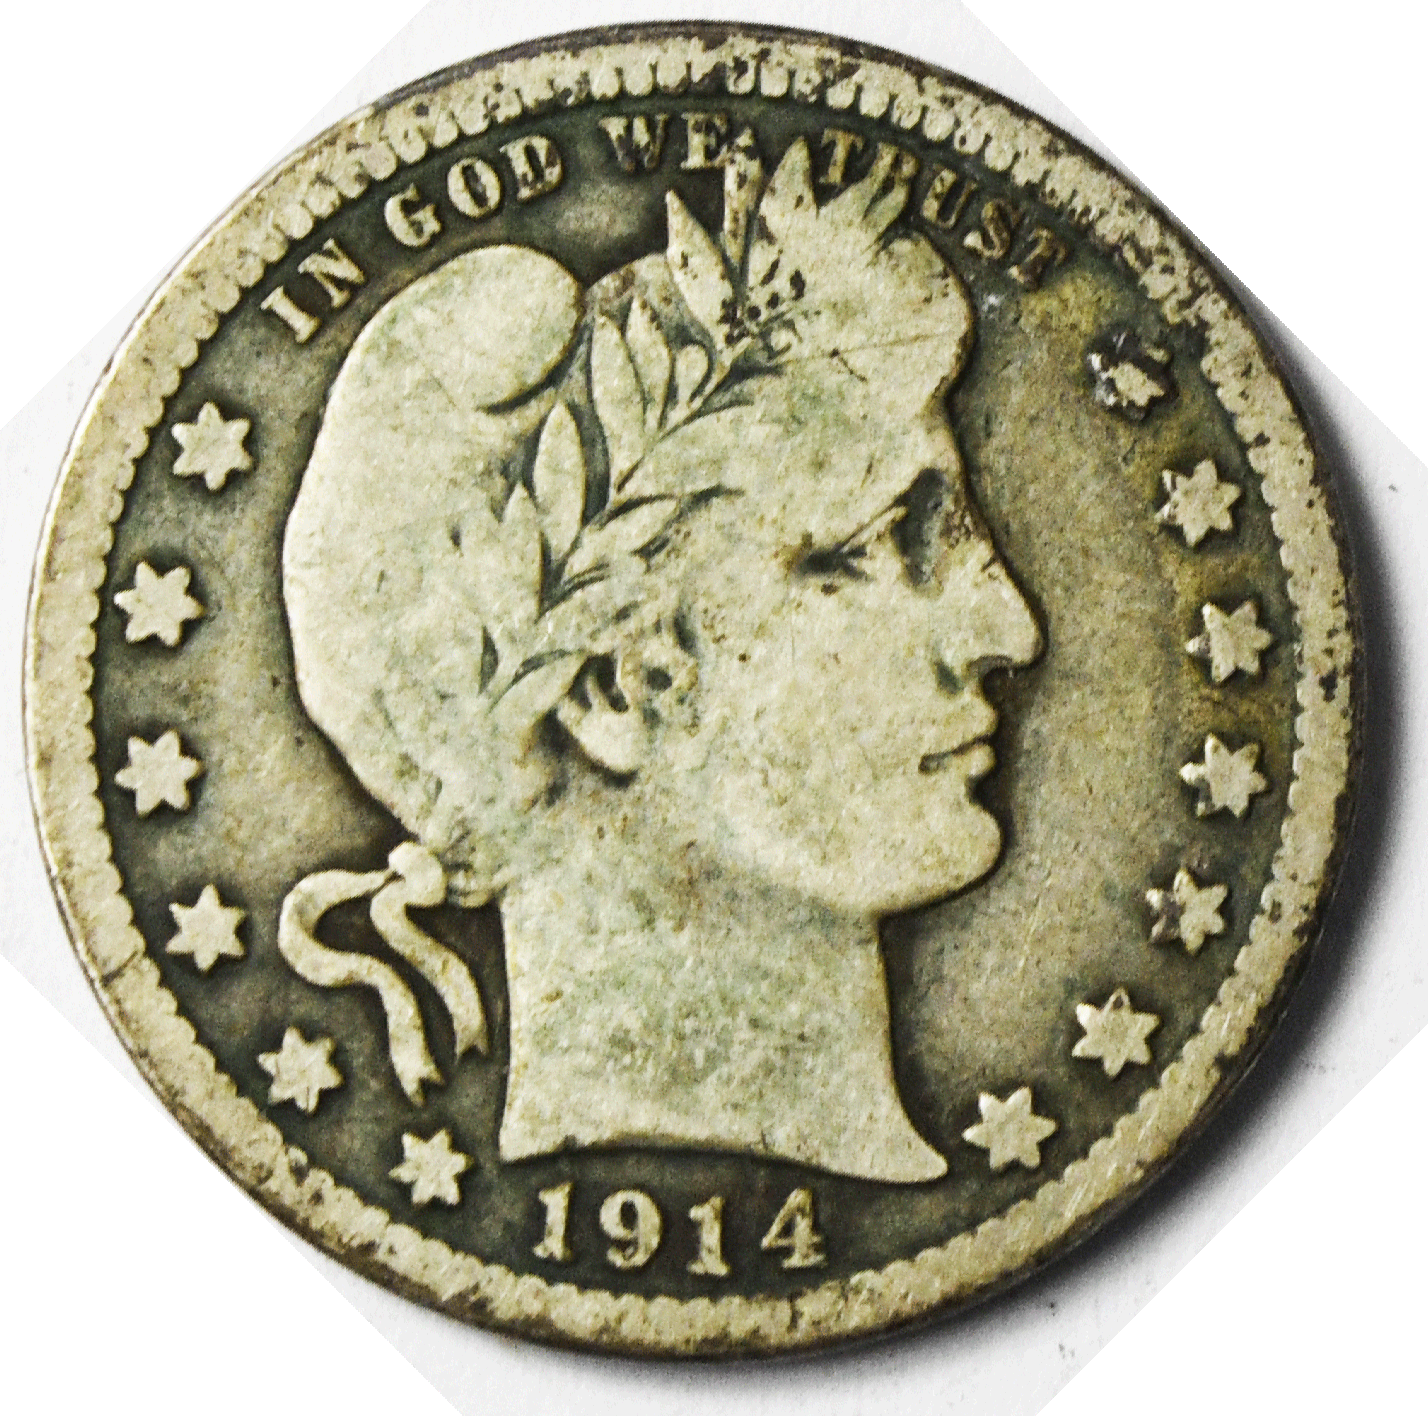 1914 D 25c Barber Silver Quarter Dollar Twenty Five Cents Denver